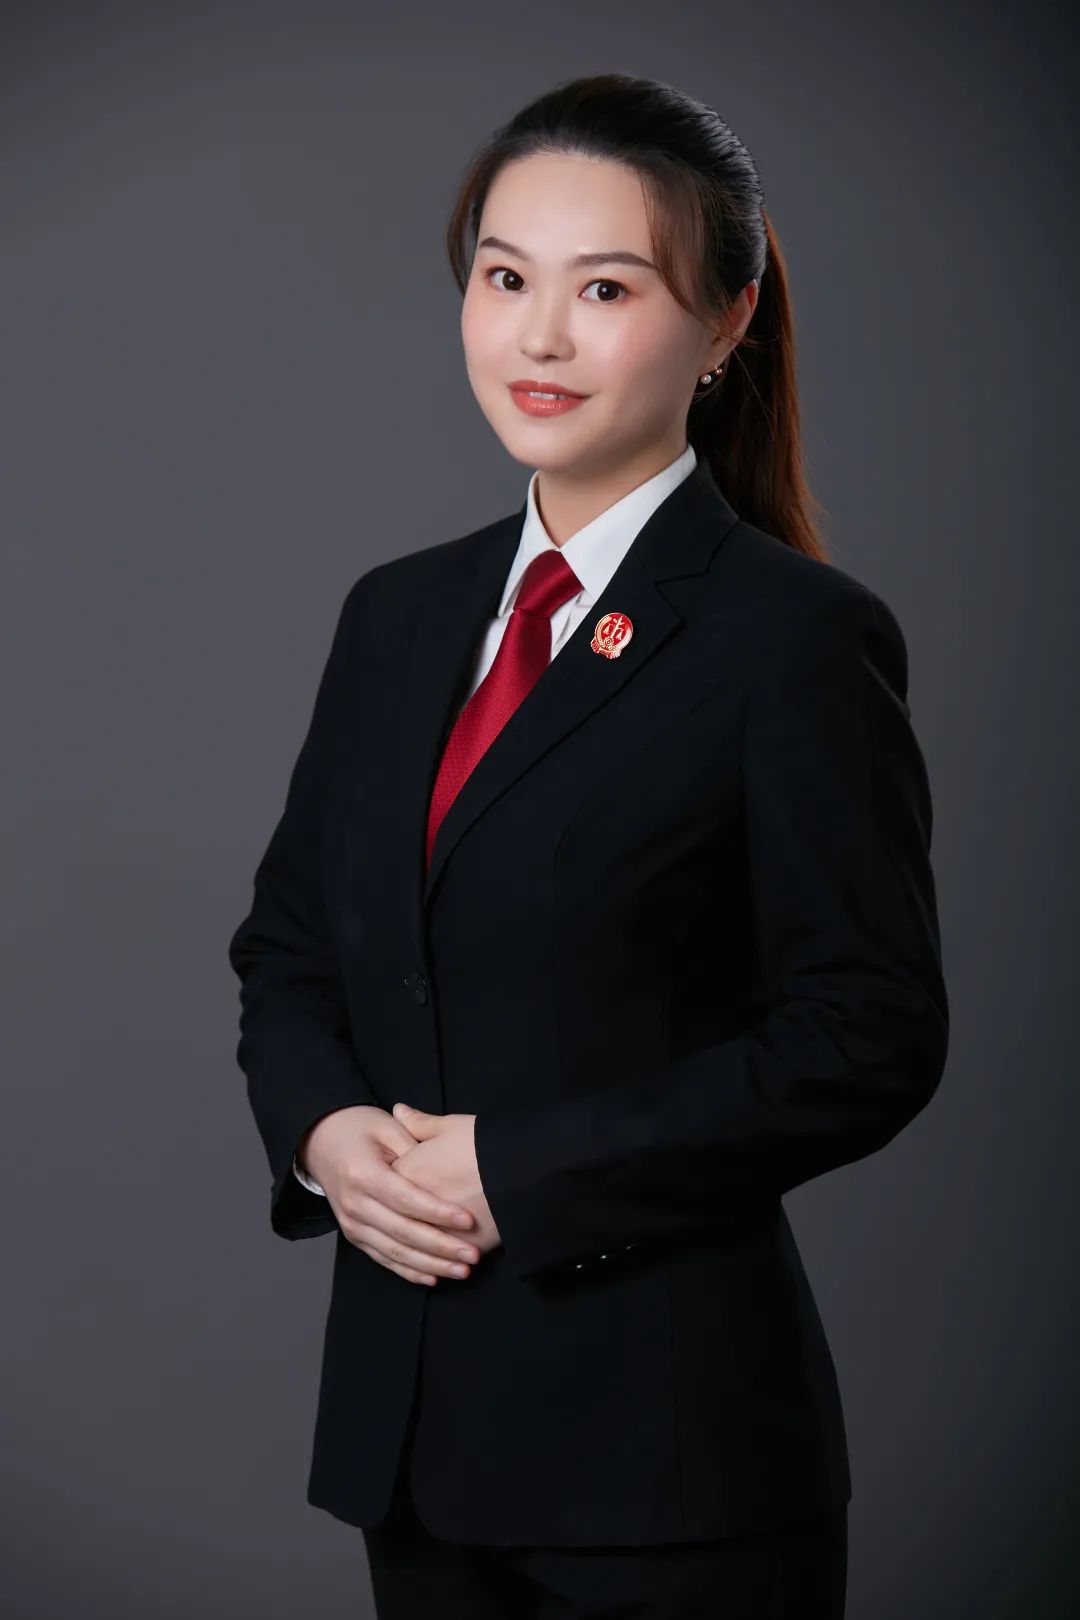 黄荔,1989年9月生,2011年6月进入张家港法院工作,现任政治部工作人员.